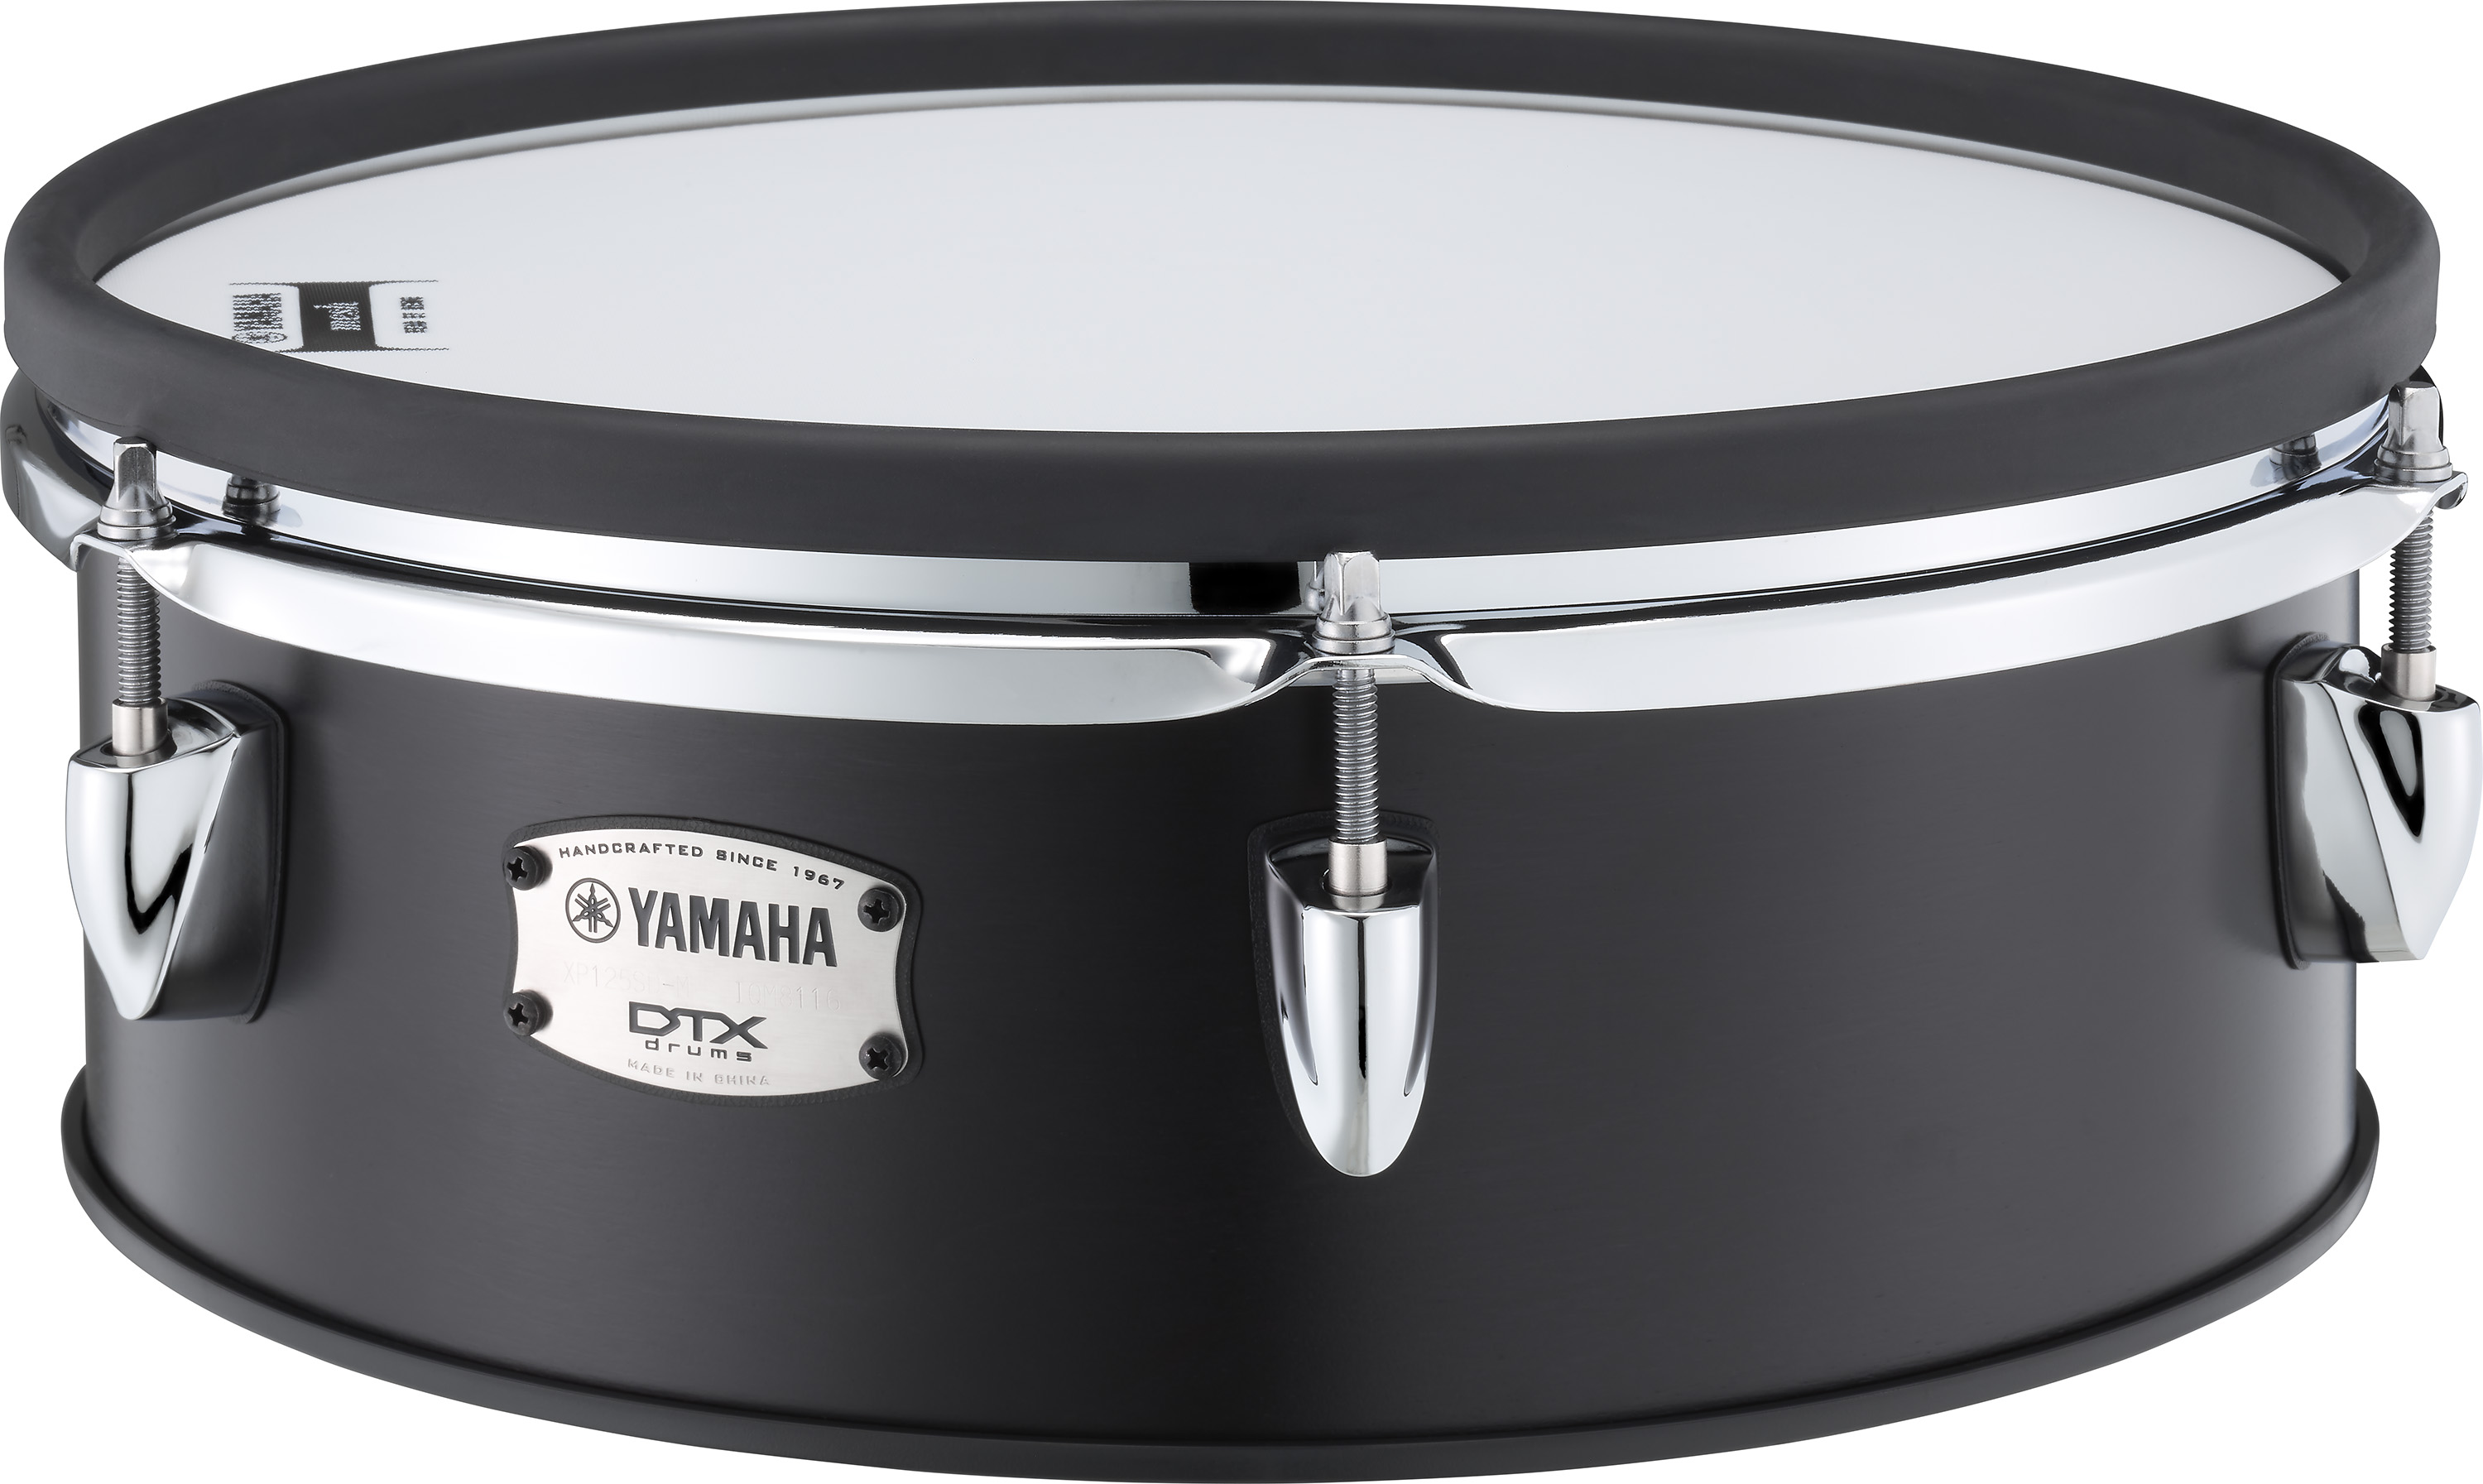 Yamaha Dtx8-km Electronic Drum Kit Mesh Black Forrest - Komplett E-Drum Set - Variation 1